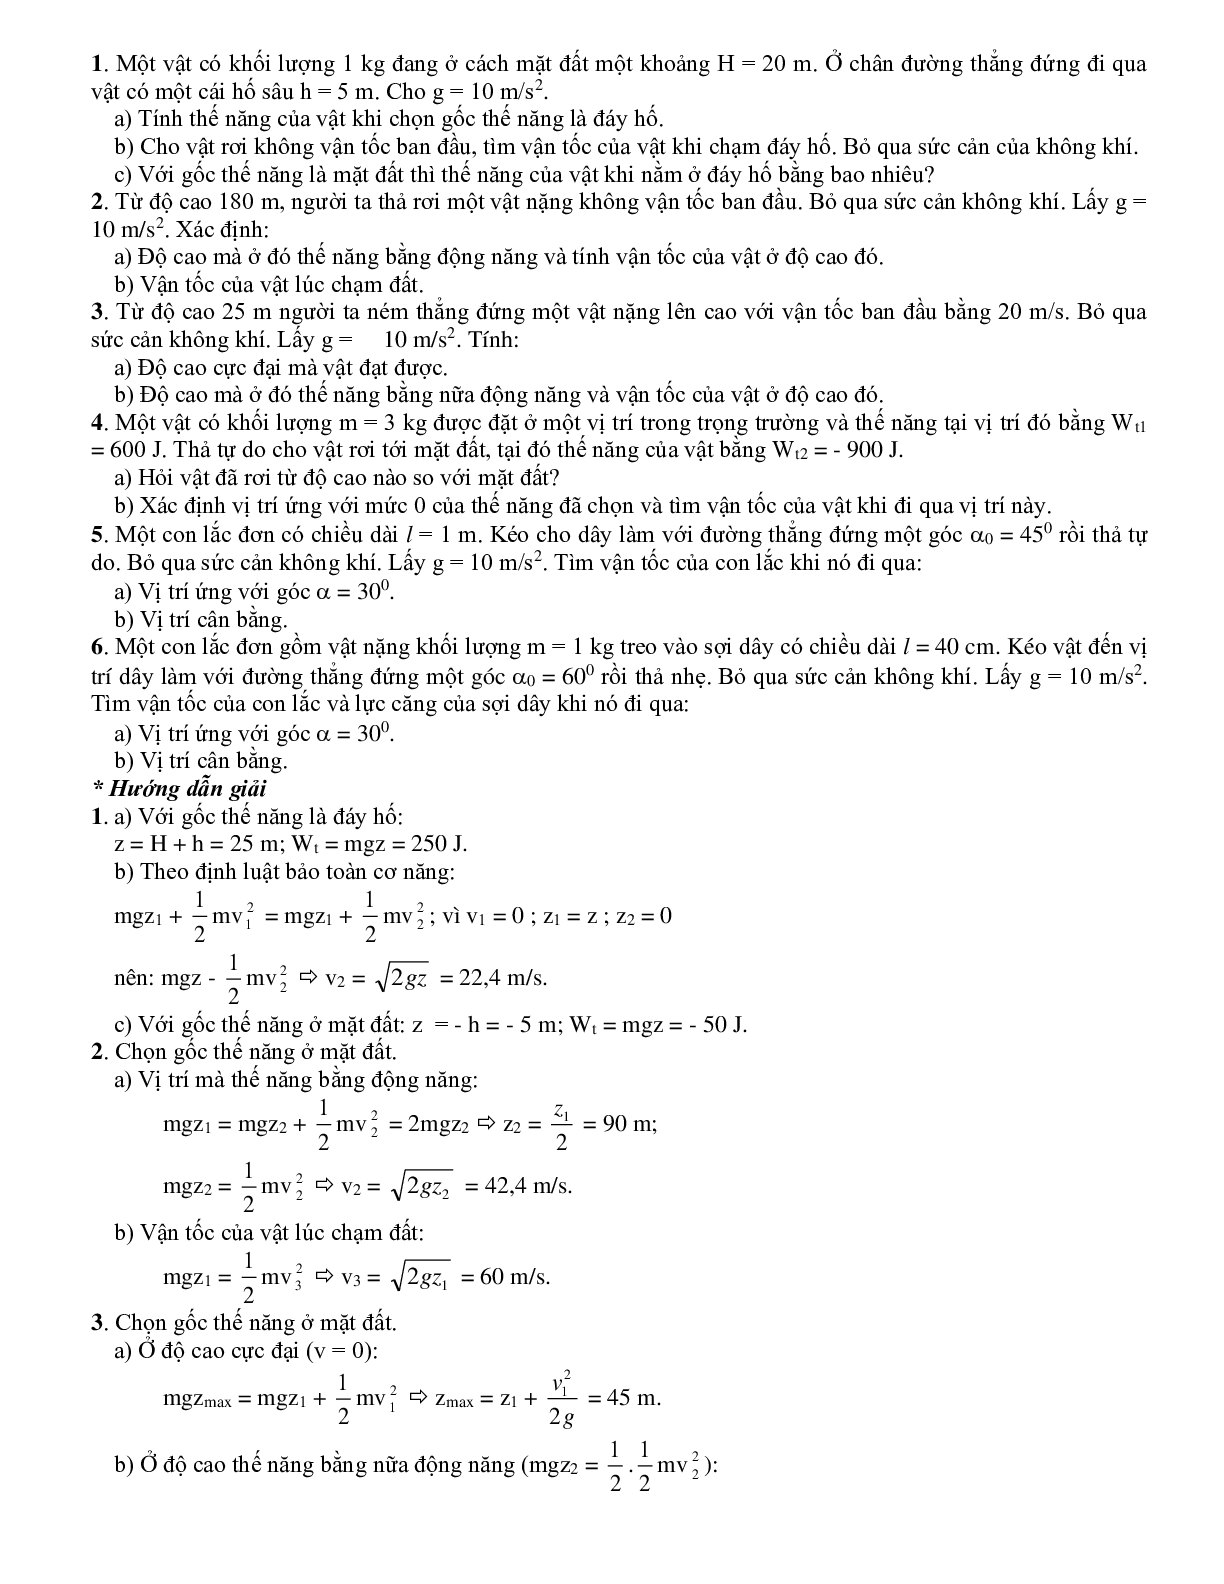 Chuyên đề Các định luật bảo toàn môn Vật lý lớp 10 (trang 7)